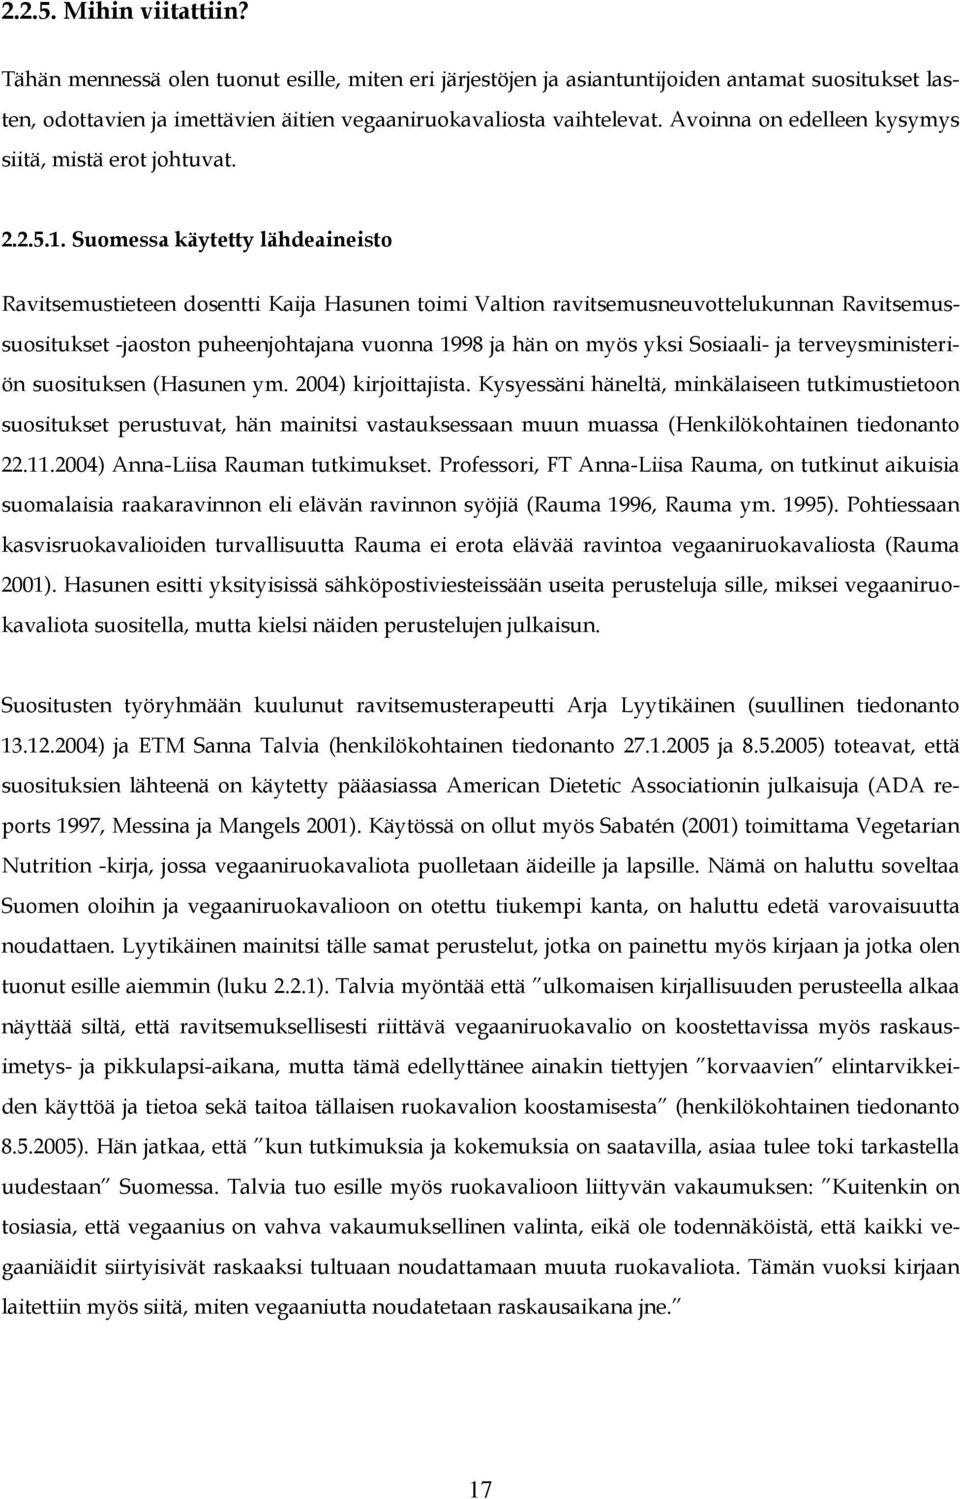 Suomessa käytetty lähdeaineisto Ravitsemustieteen dosentti Kaija Hasunen toimi Valtion ravitsemusneuvottelukunnan Ravitsemussuositukset -jaoston puheenjohtajana vuonna 1998 ja hän on myös yksi